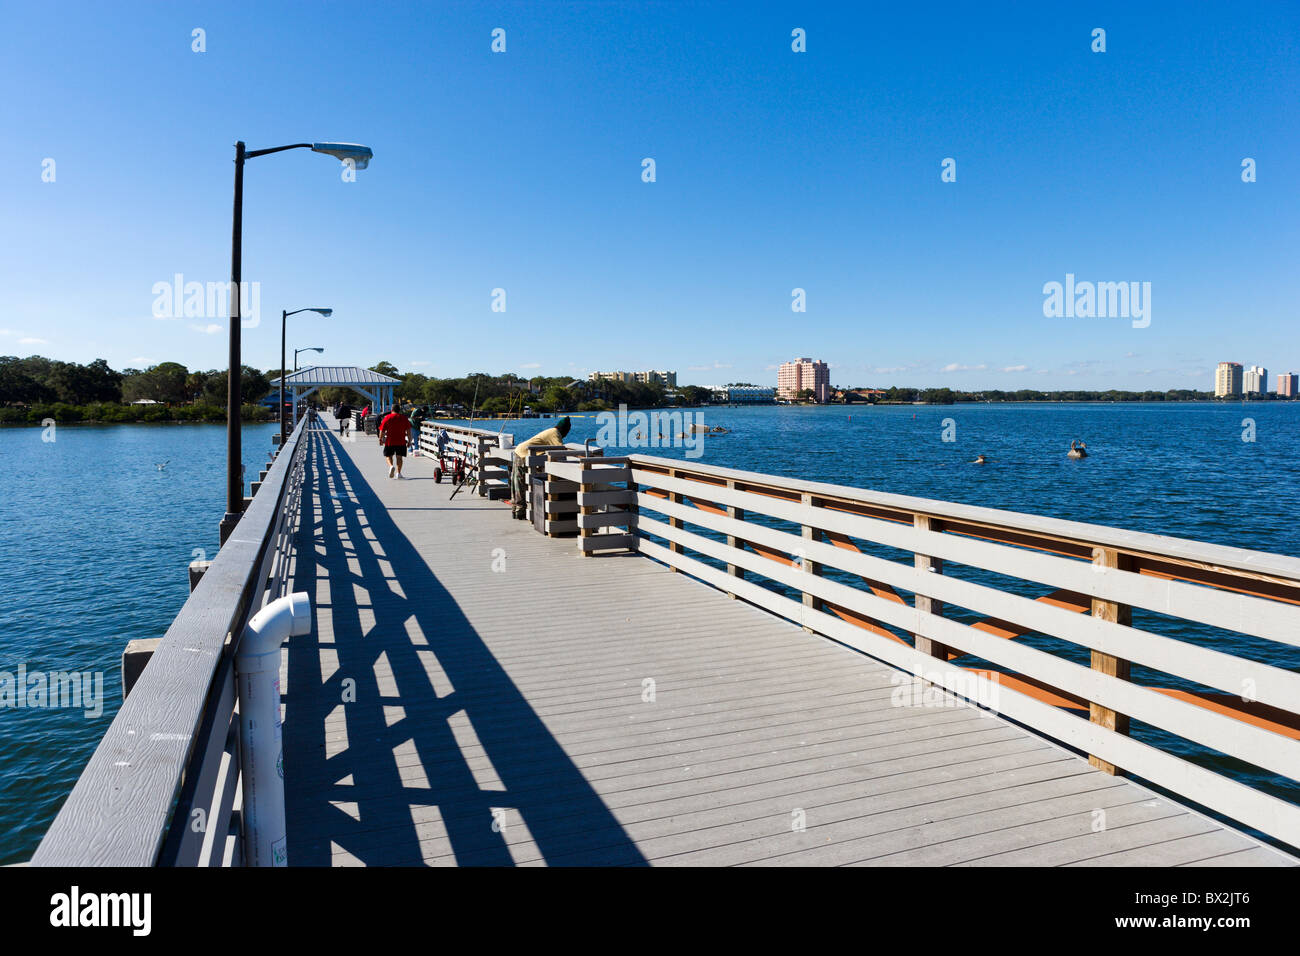 The Fishing Pier at Ballast Point Park, Interbay Peninsula, Tampa, Tampa Bay, Florida, USA Stock Photo